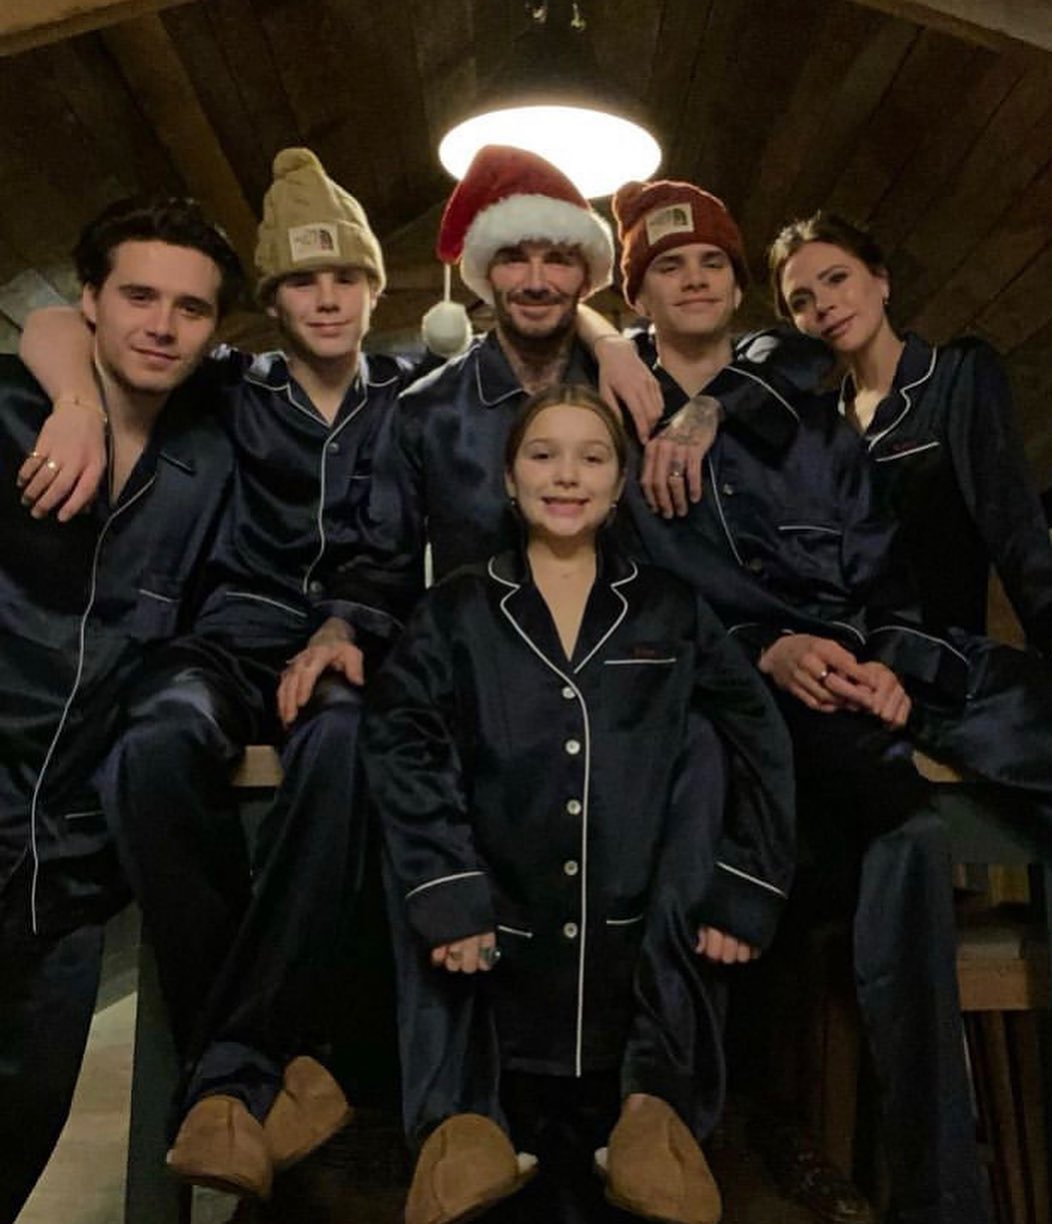 'Cực phẩm' ngày Giáng sinh đích thị là bức ảnh đẹp không tì vết của đại gia đình David Beckham  - Ảnh 2